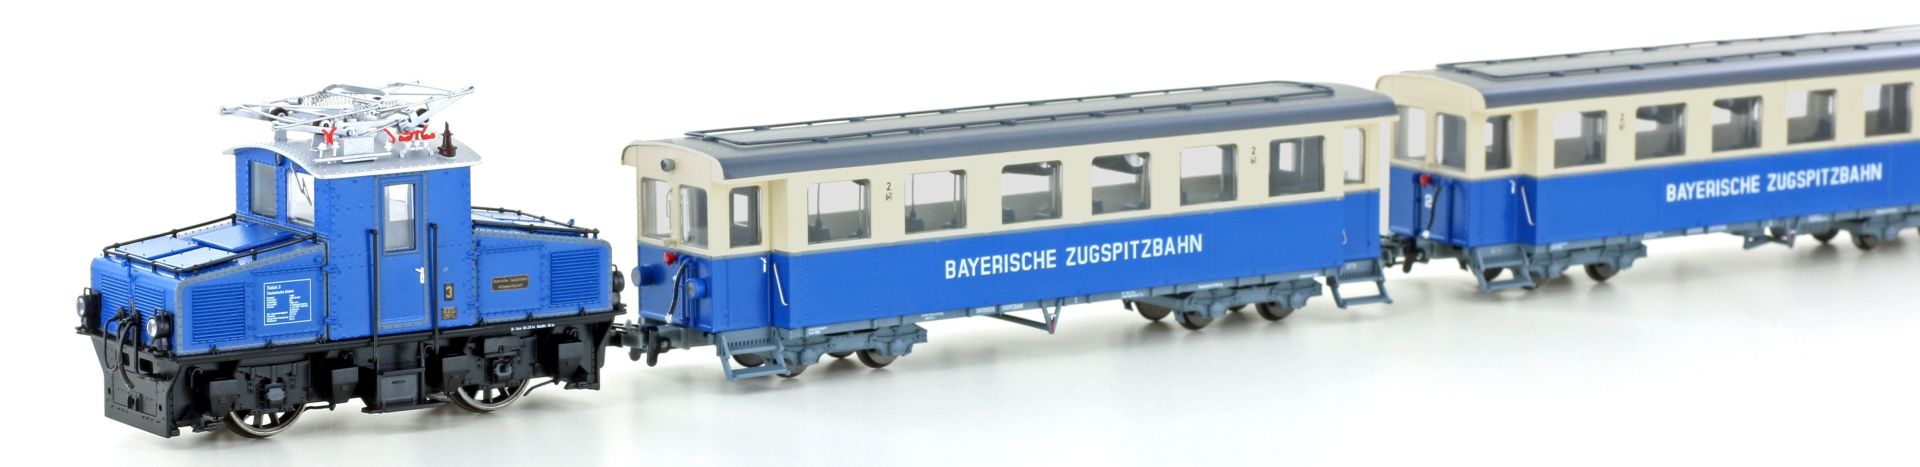 Hobbytrain H43105 - Zugset der Zugspitzbahn, AEG Tallok und 2 Wagen, Ep.V-VI, H0m